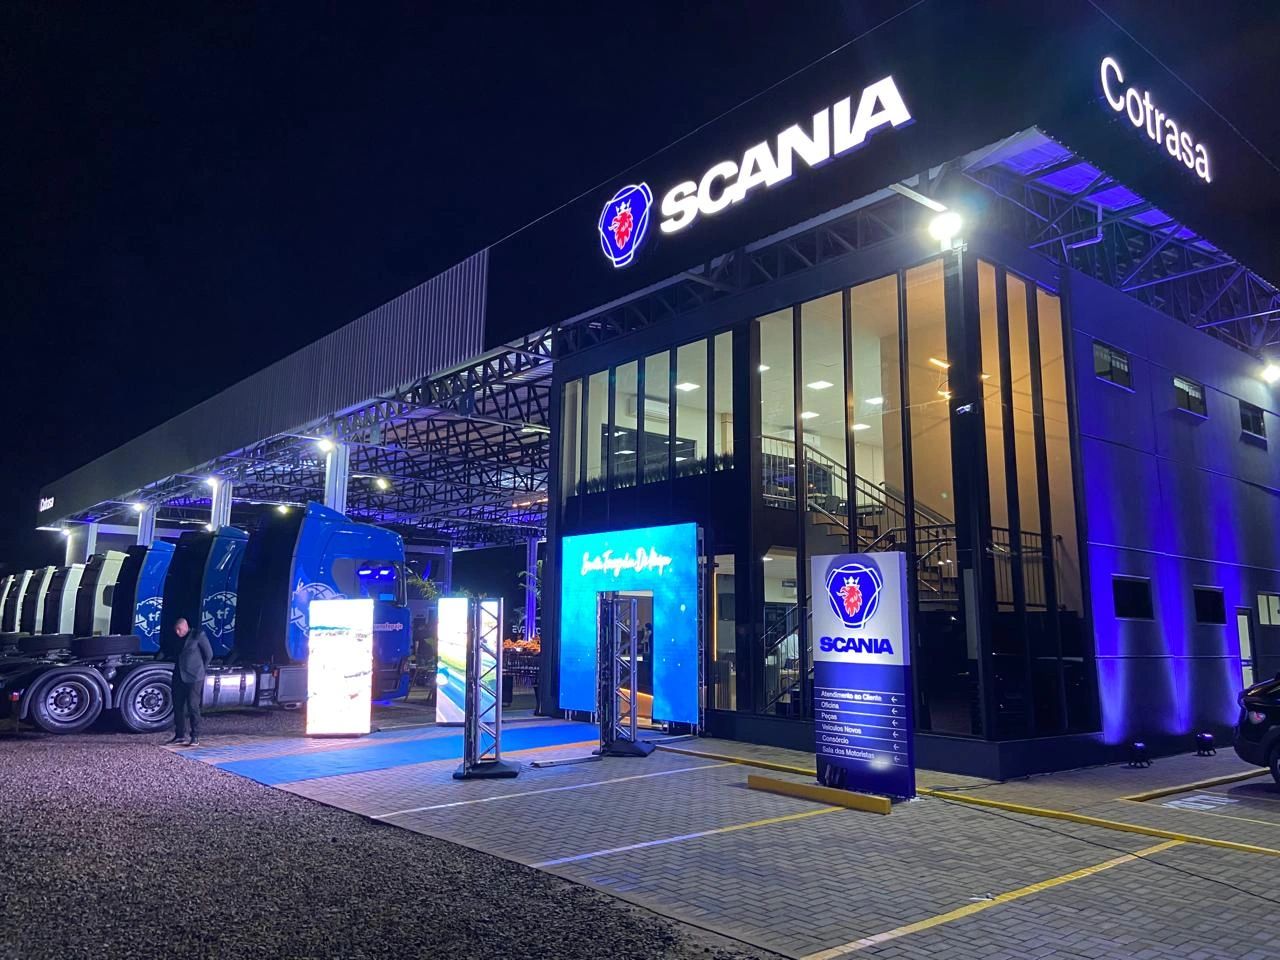 Inaugurada a nova casa padrão Scania Cotrasa no Paraná